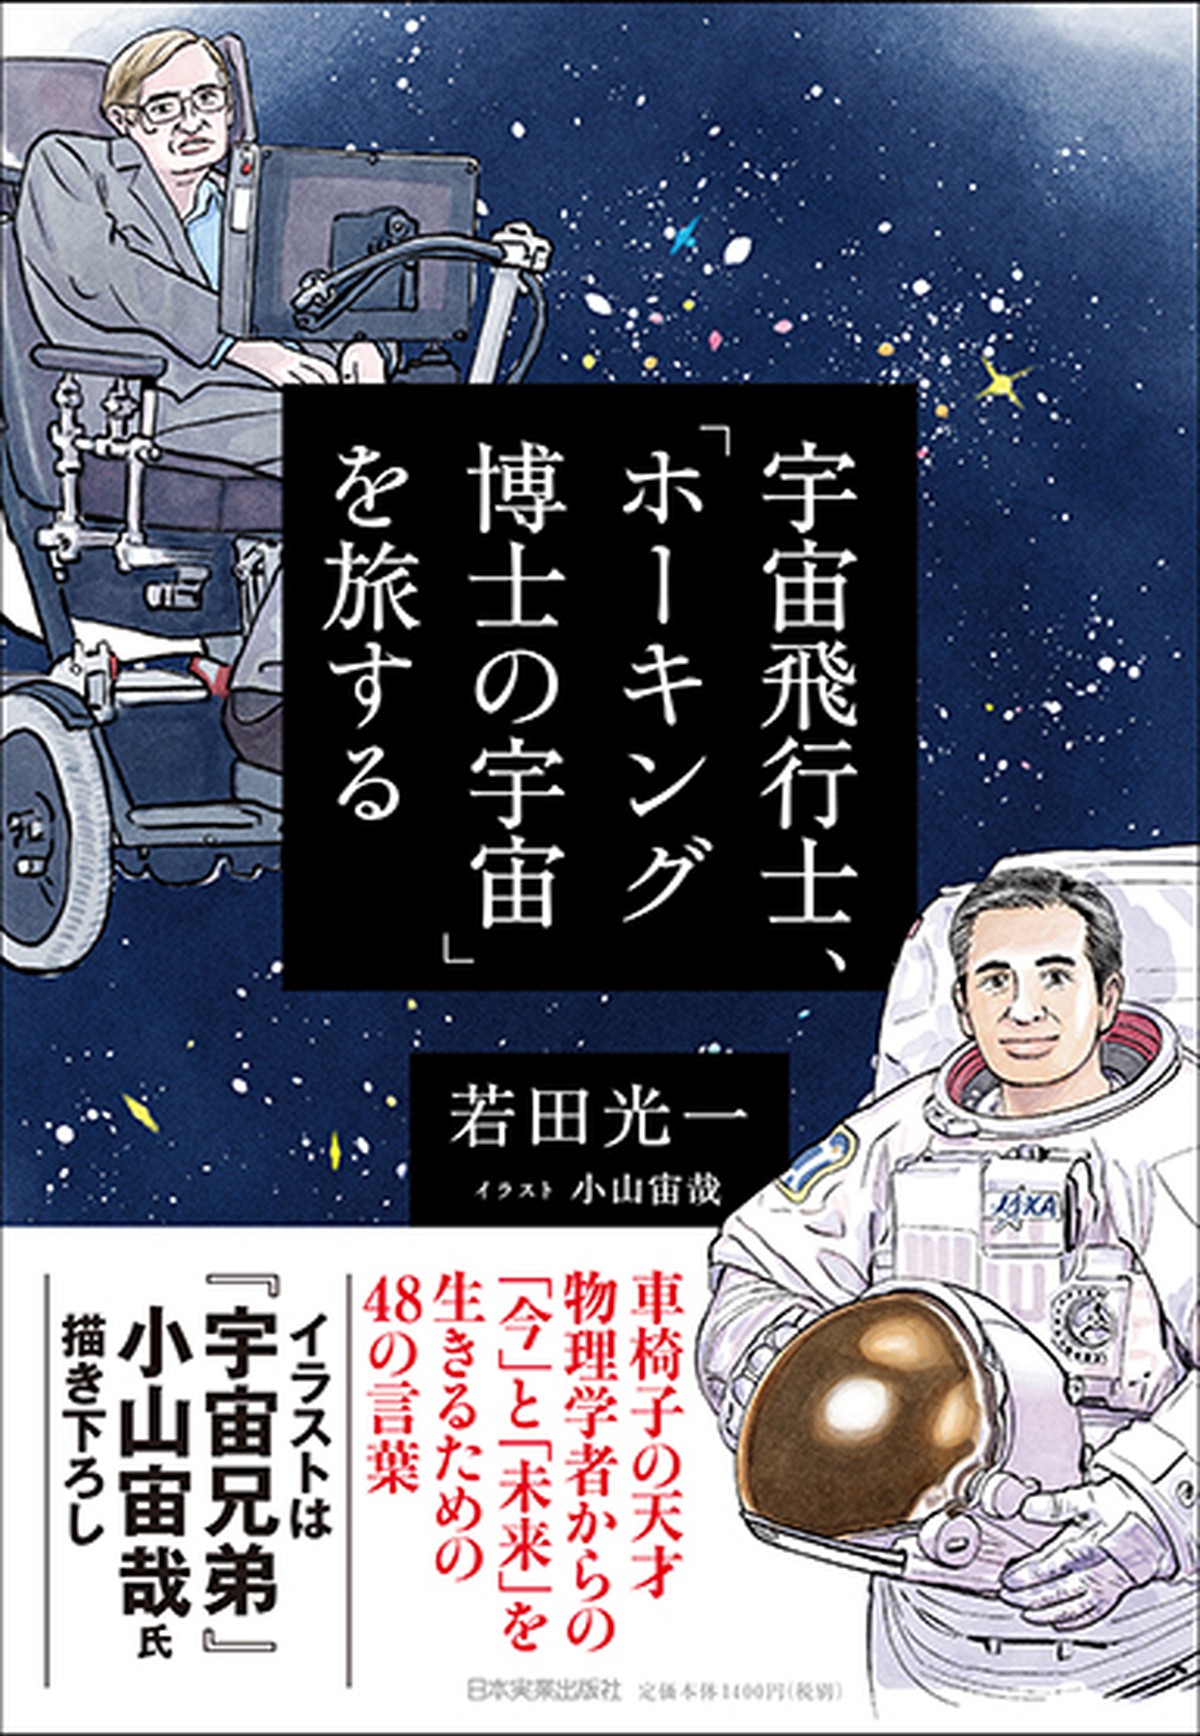 宇宙飛行士 ホーキング博士の宇宙 を旅する まるペンshop 日本実業出版社オフィシャルwebストア